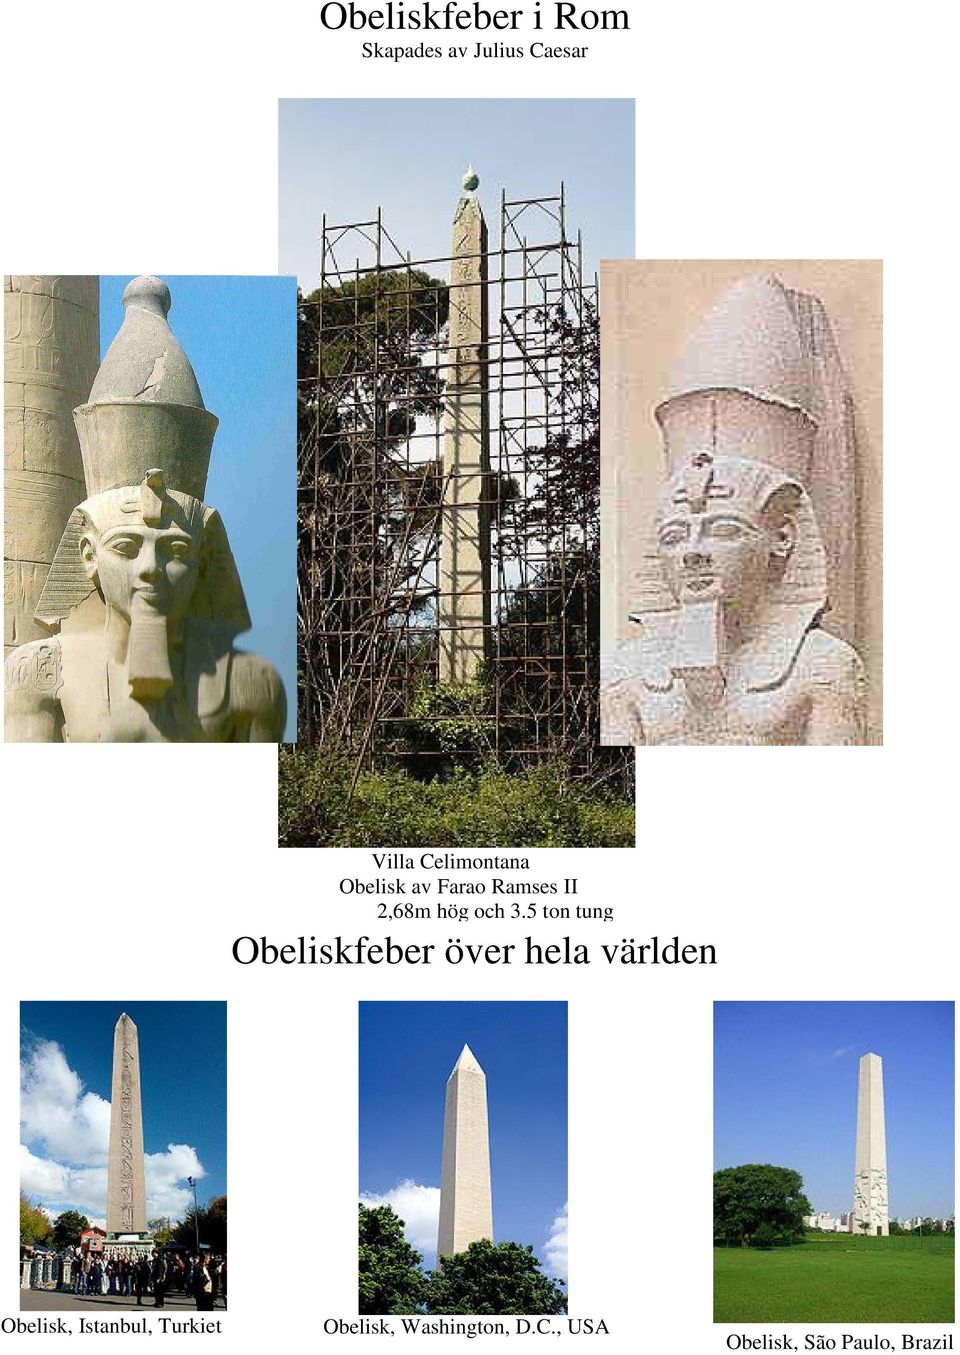 5 ton tung Obeliskfeber över hela världen Obelisk,